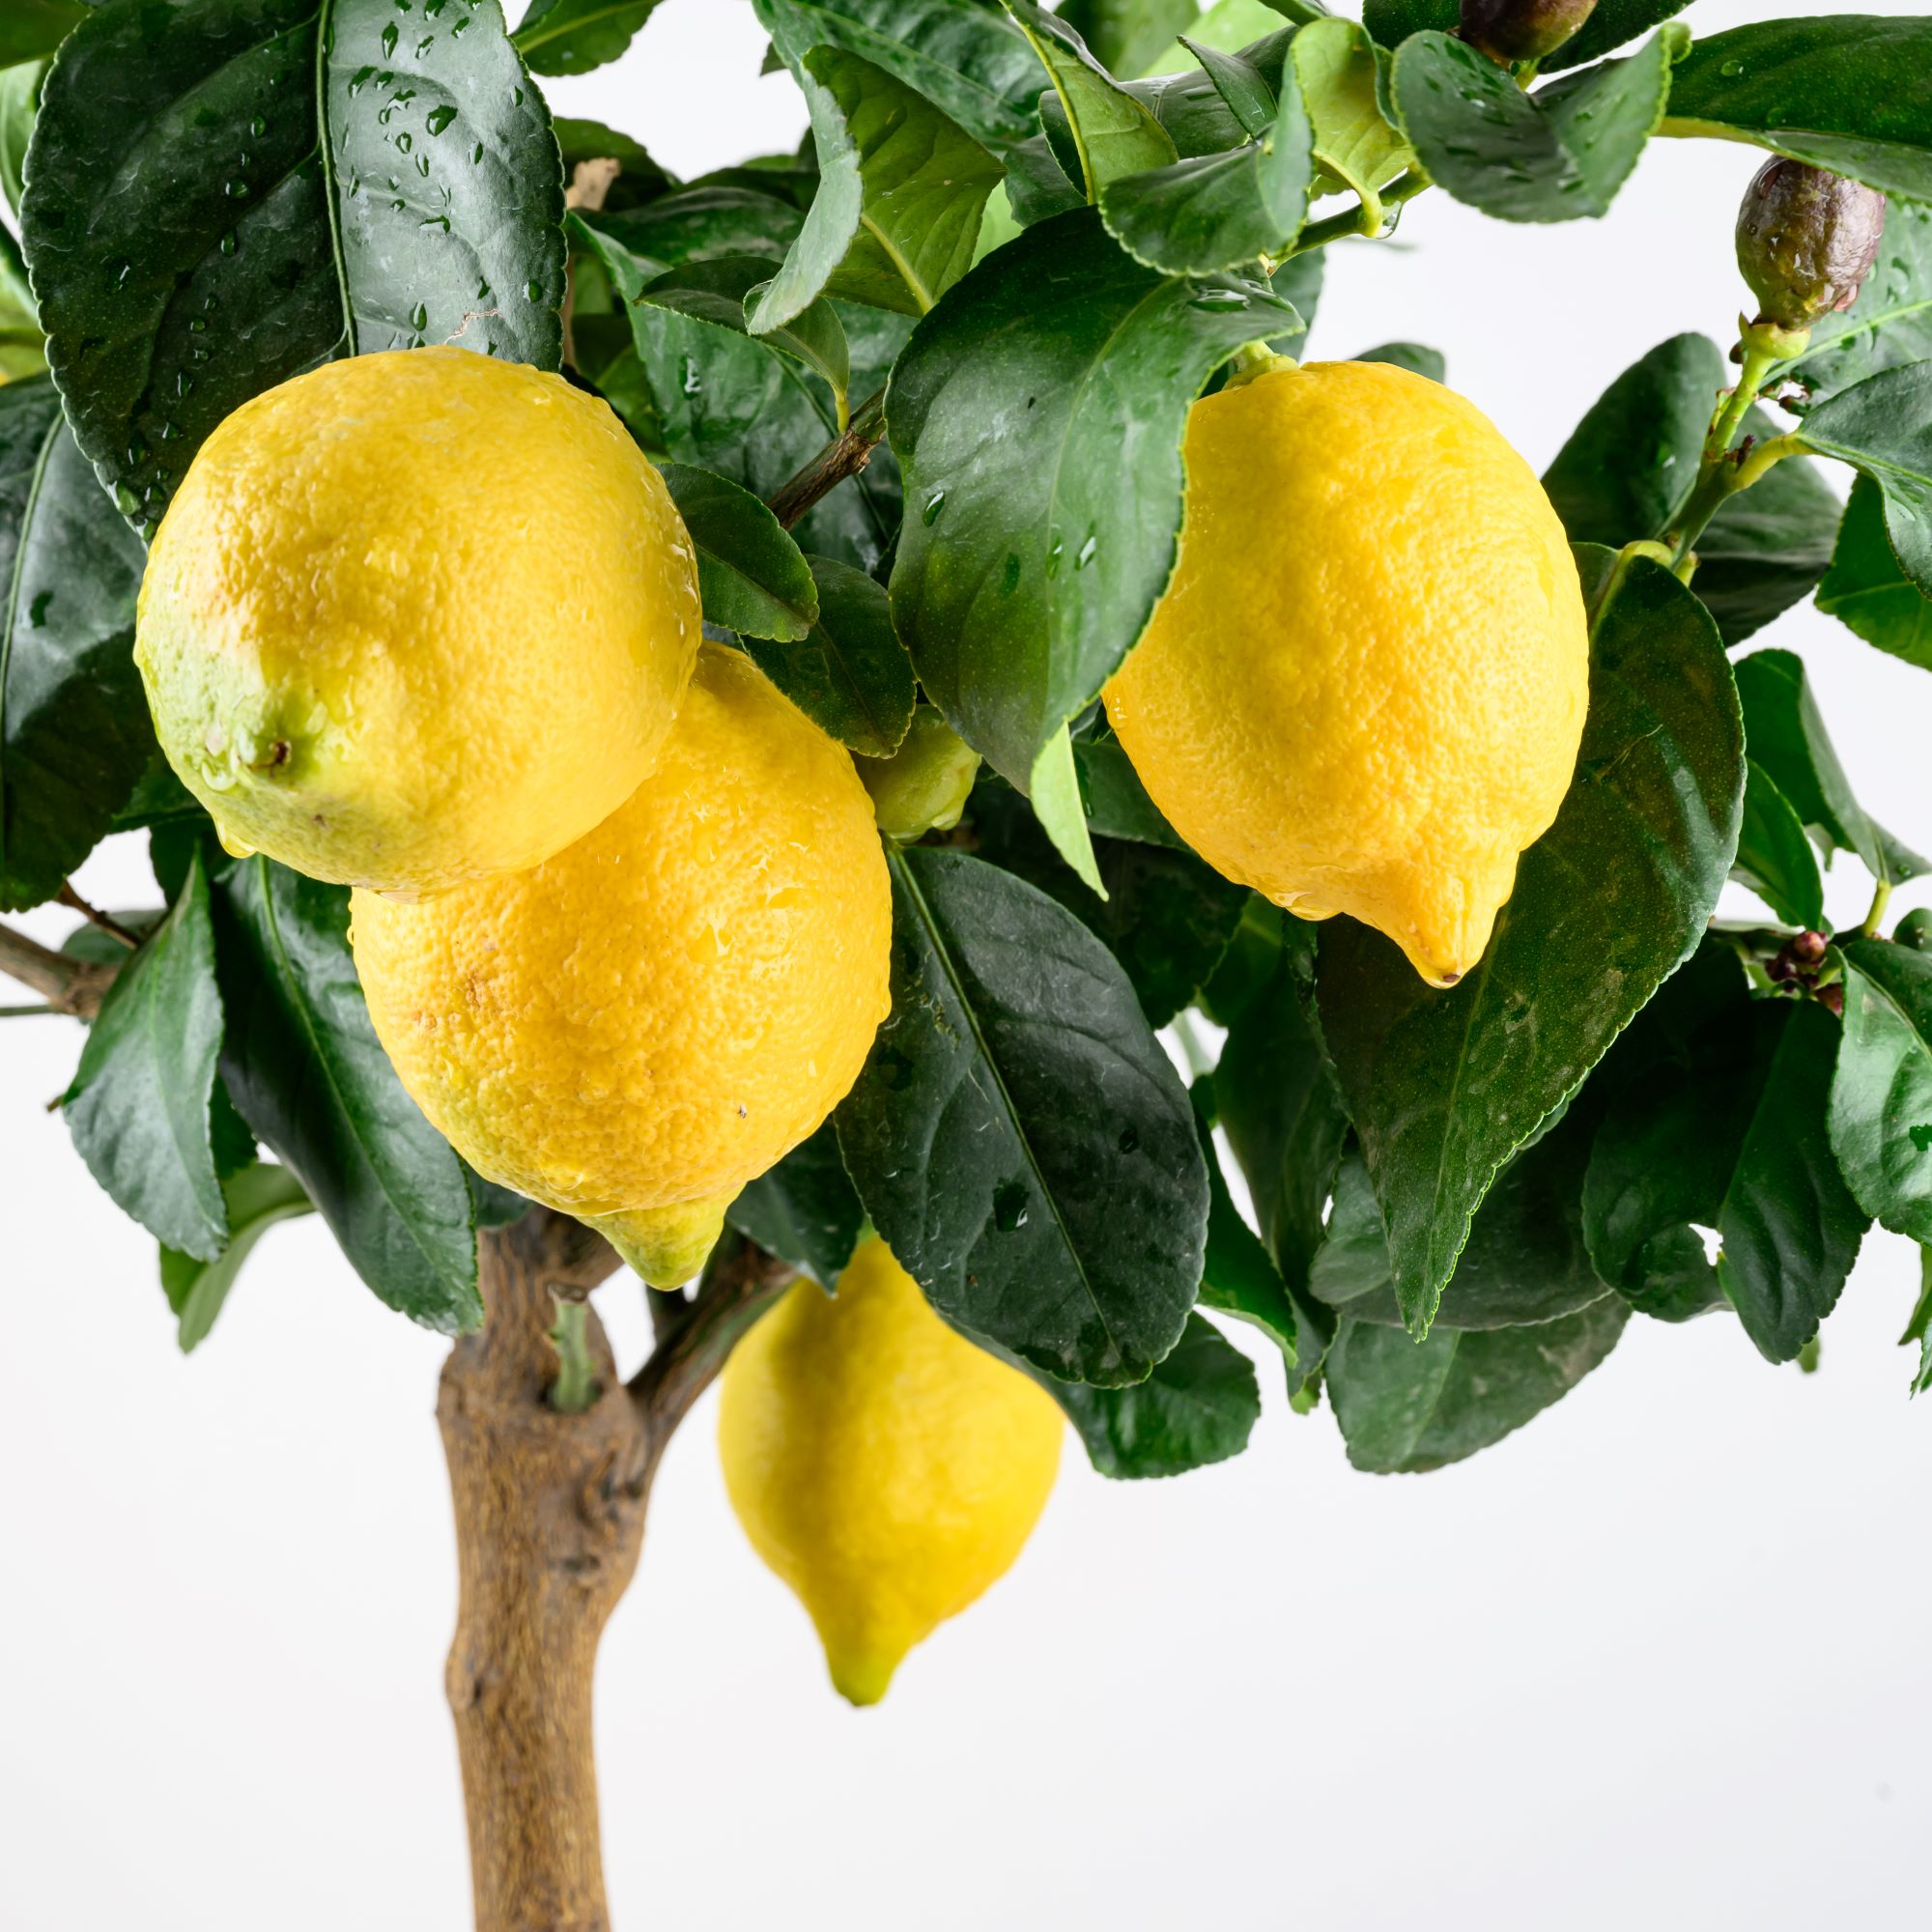 Carrubaro Zitrone [Mezzo] - Citrus Limon 'Feminello Carrubaro' - Sizilianische Zitrone